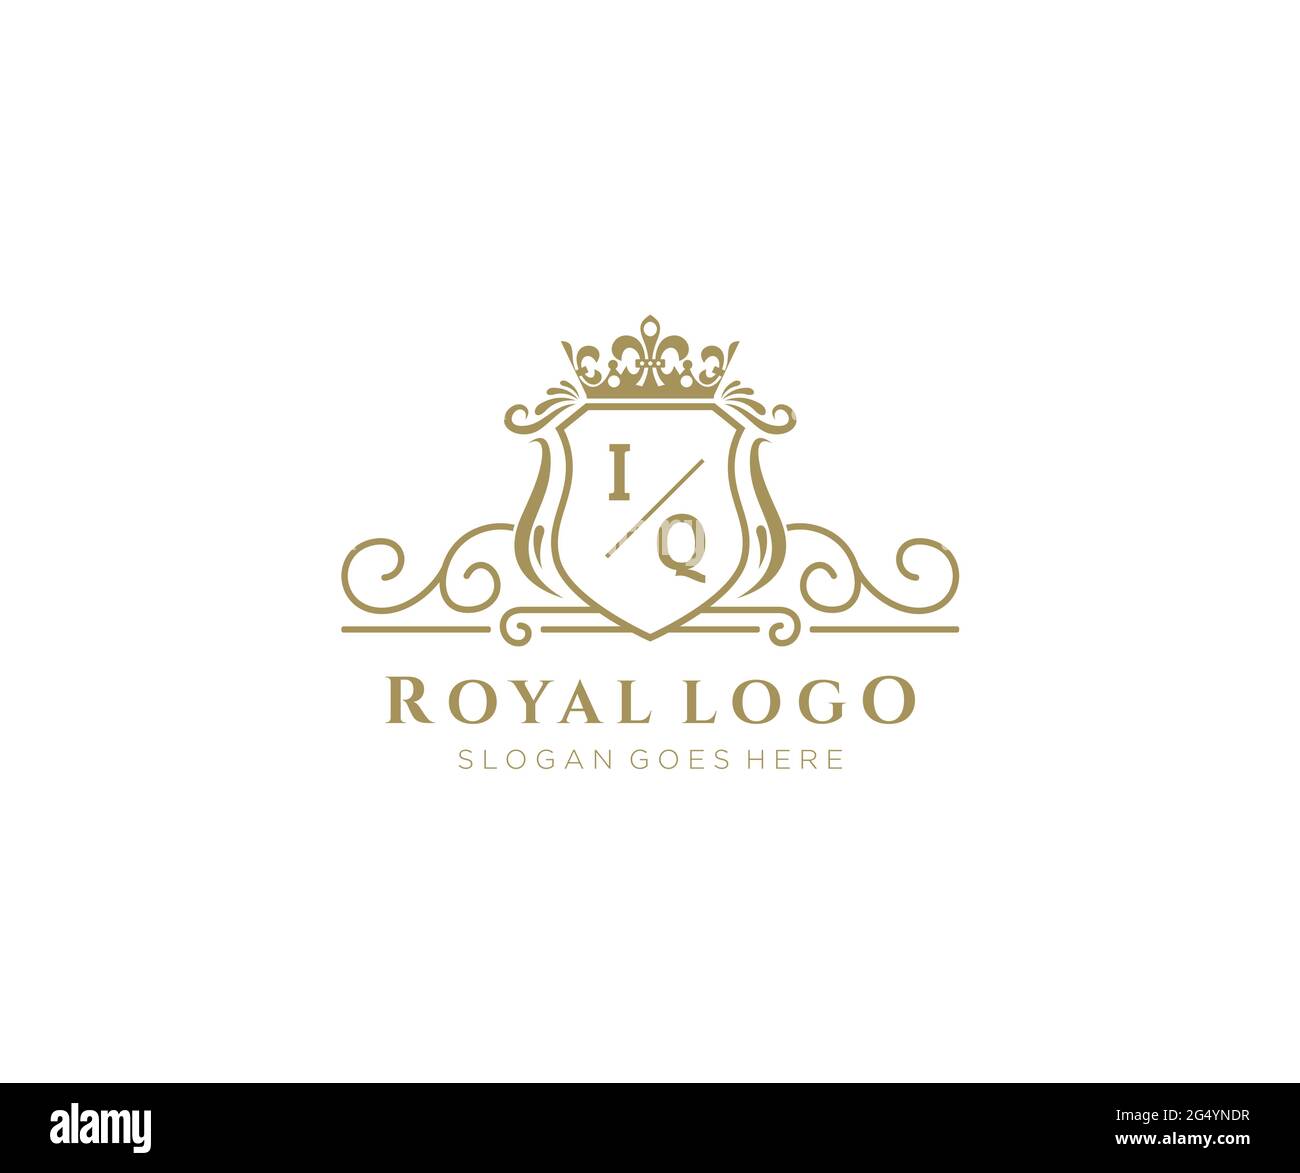 IQ Letter - modello con logo del marchio di lusso, per ristorante, Royalty, boutique, caffè, Hotel, Araldico, Gioielli, Moda e altre illustrazioni vettoriali. Illustrazione Vettoriale